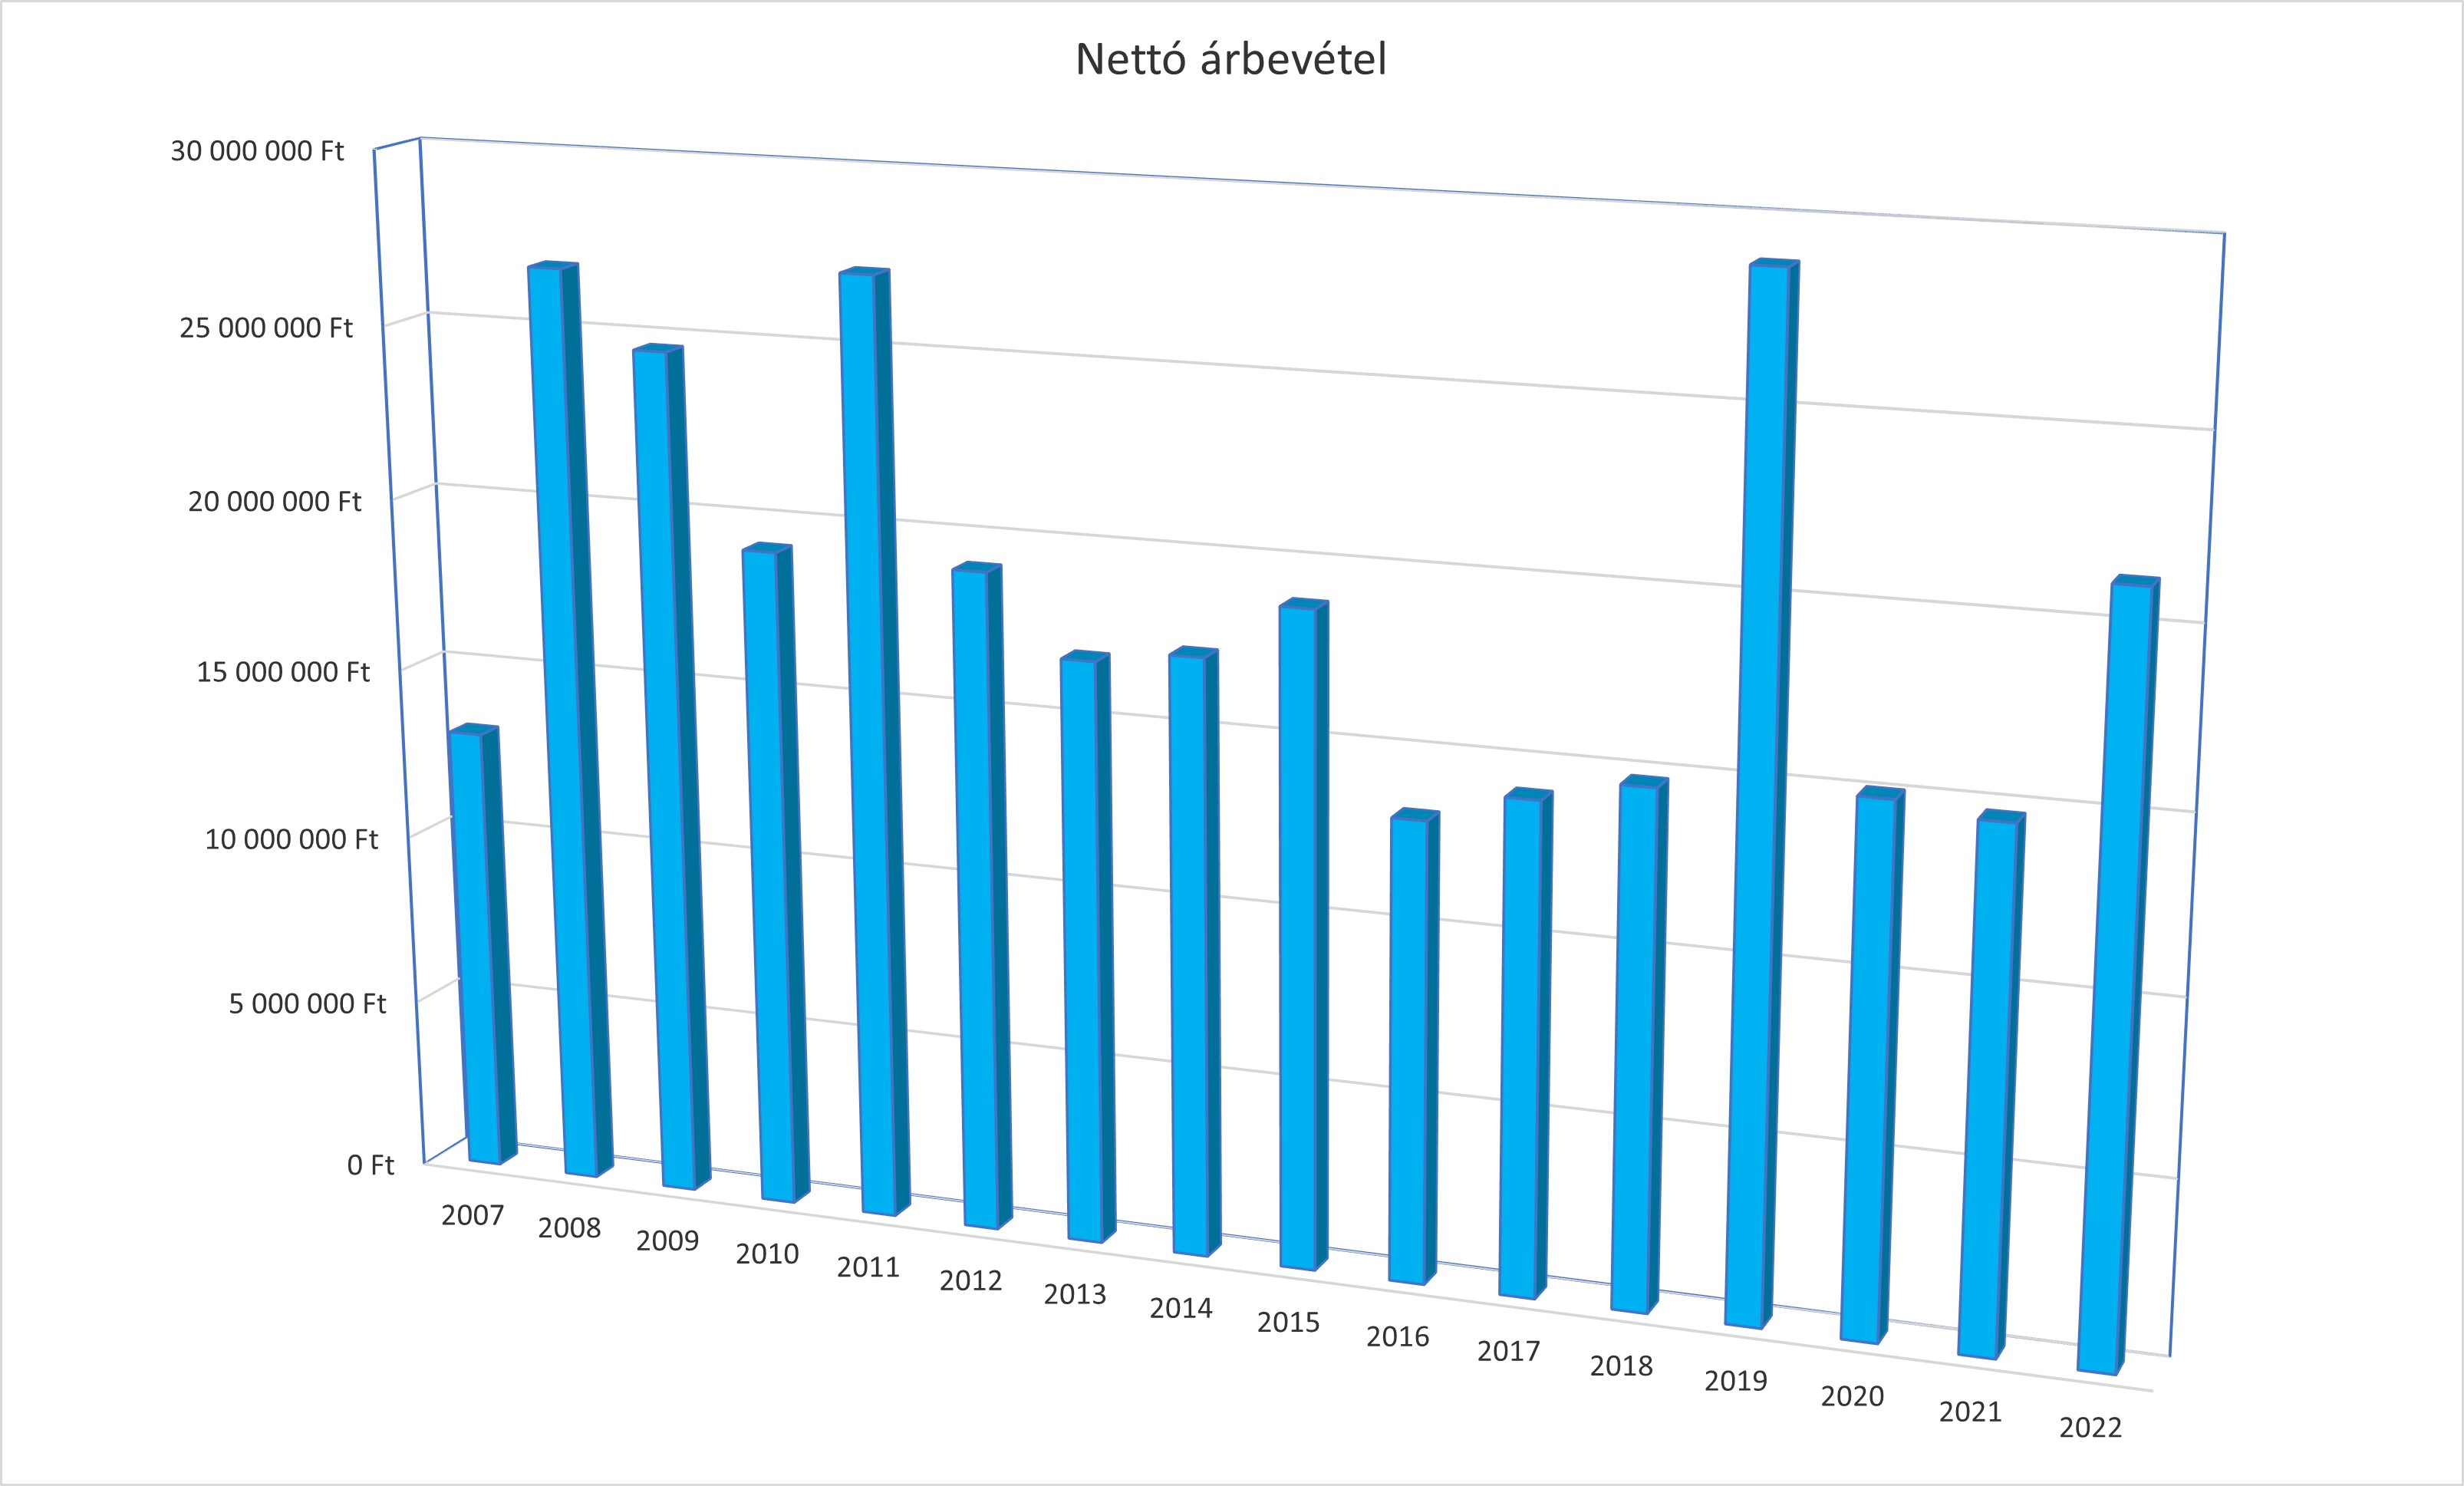 Nettó árbevétel alakulása 2007 és 2022 között